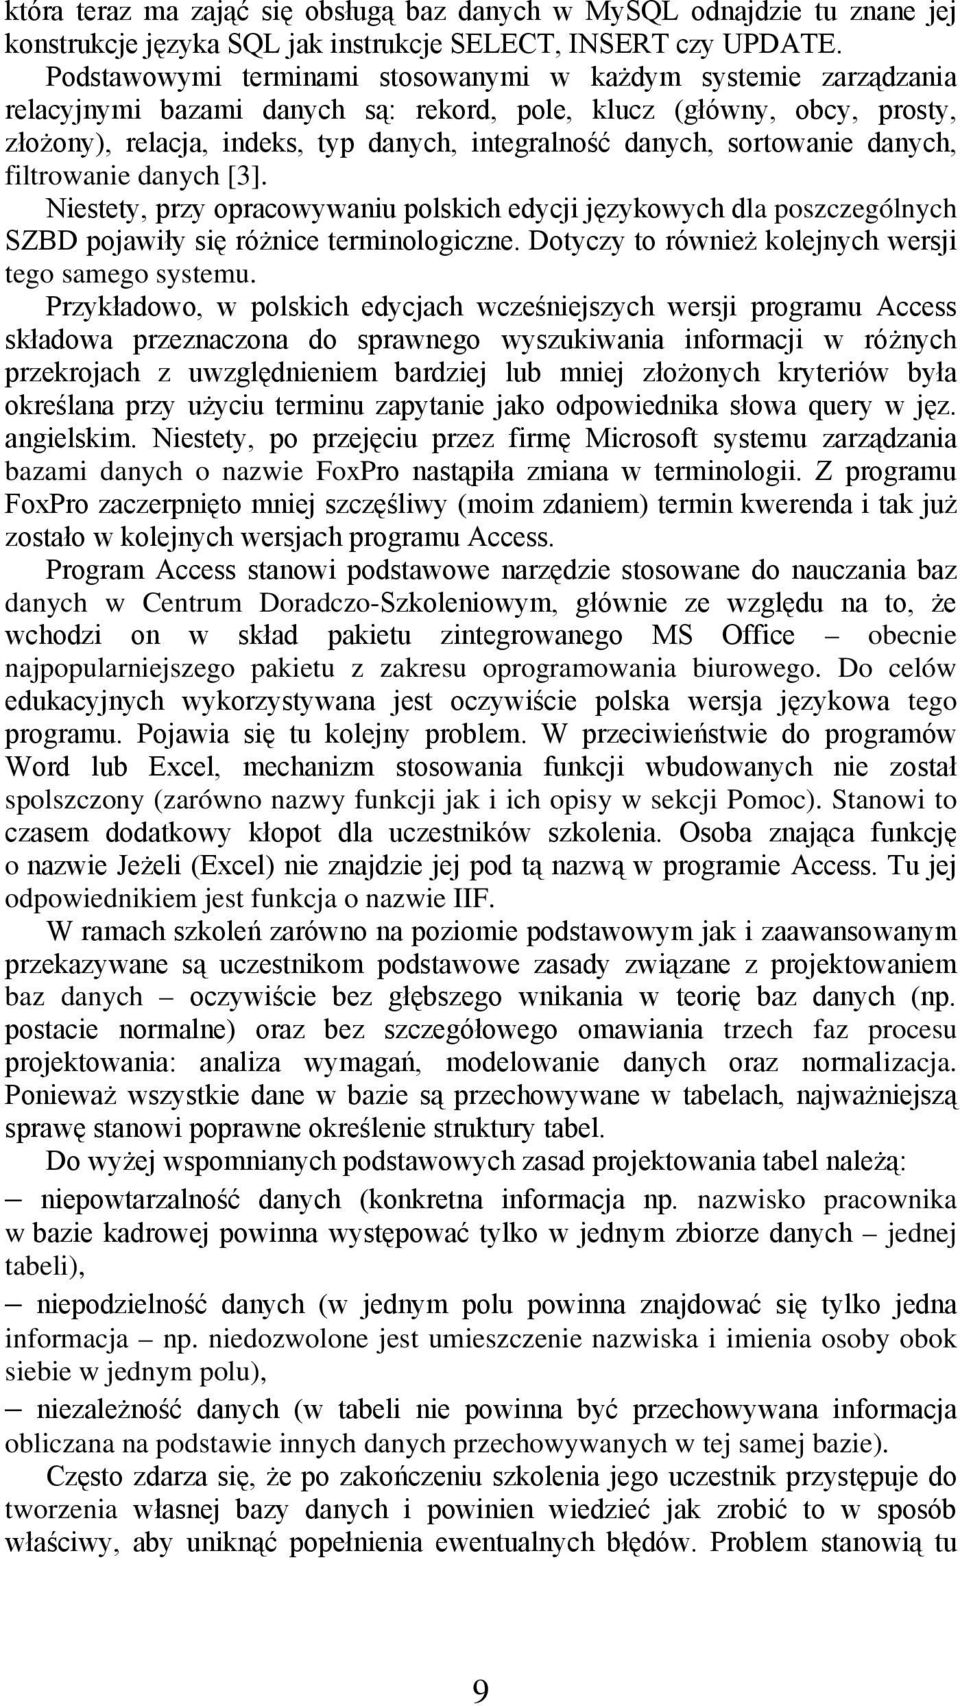 sortowanie danych, filtrowanie danych [3]. Niestety, przy opracowywaniu polskich edycji językowych dla poszczególnych SZBD pojawiły się różnice terminologiczne.